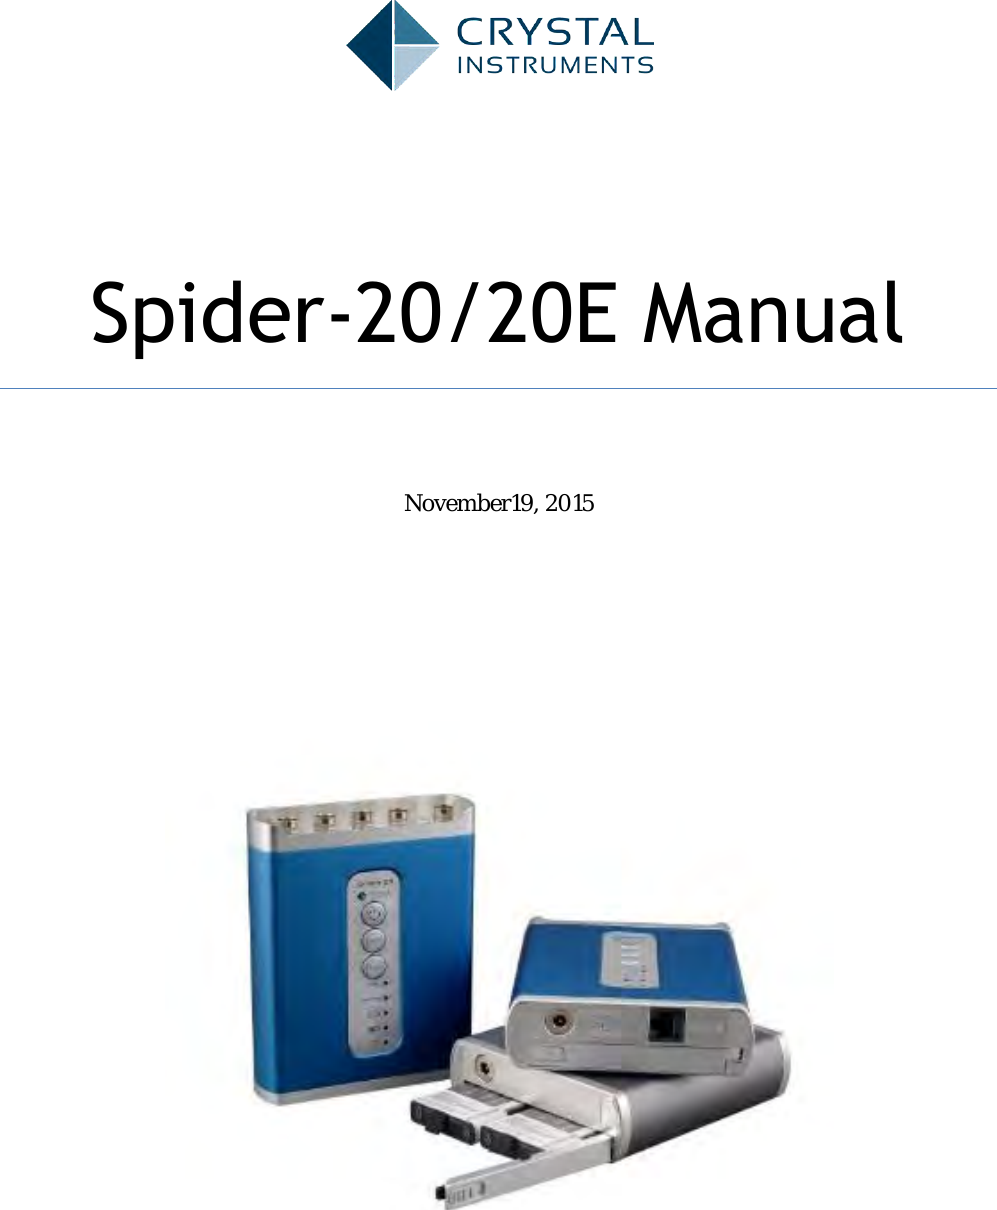  Spider-20/20E Manual        November19, 2015          